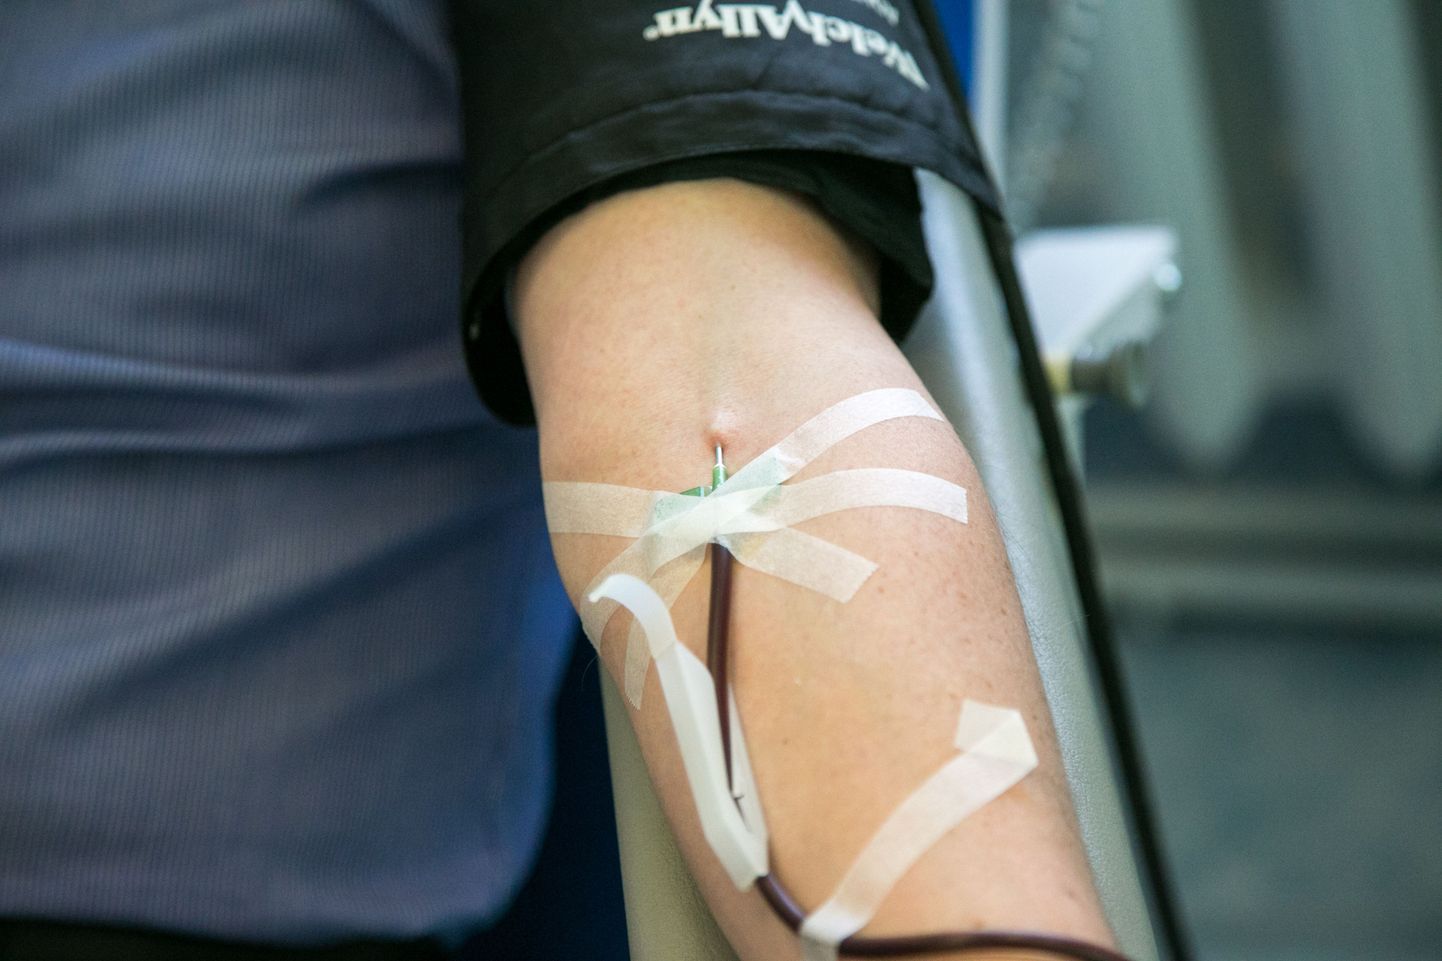 Verd annetades on võimalik päästa paljude inimeste elu.